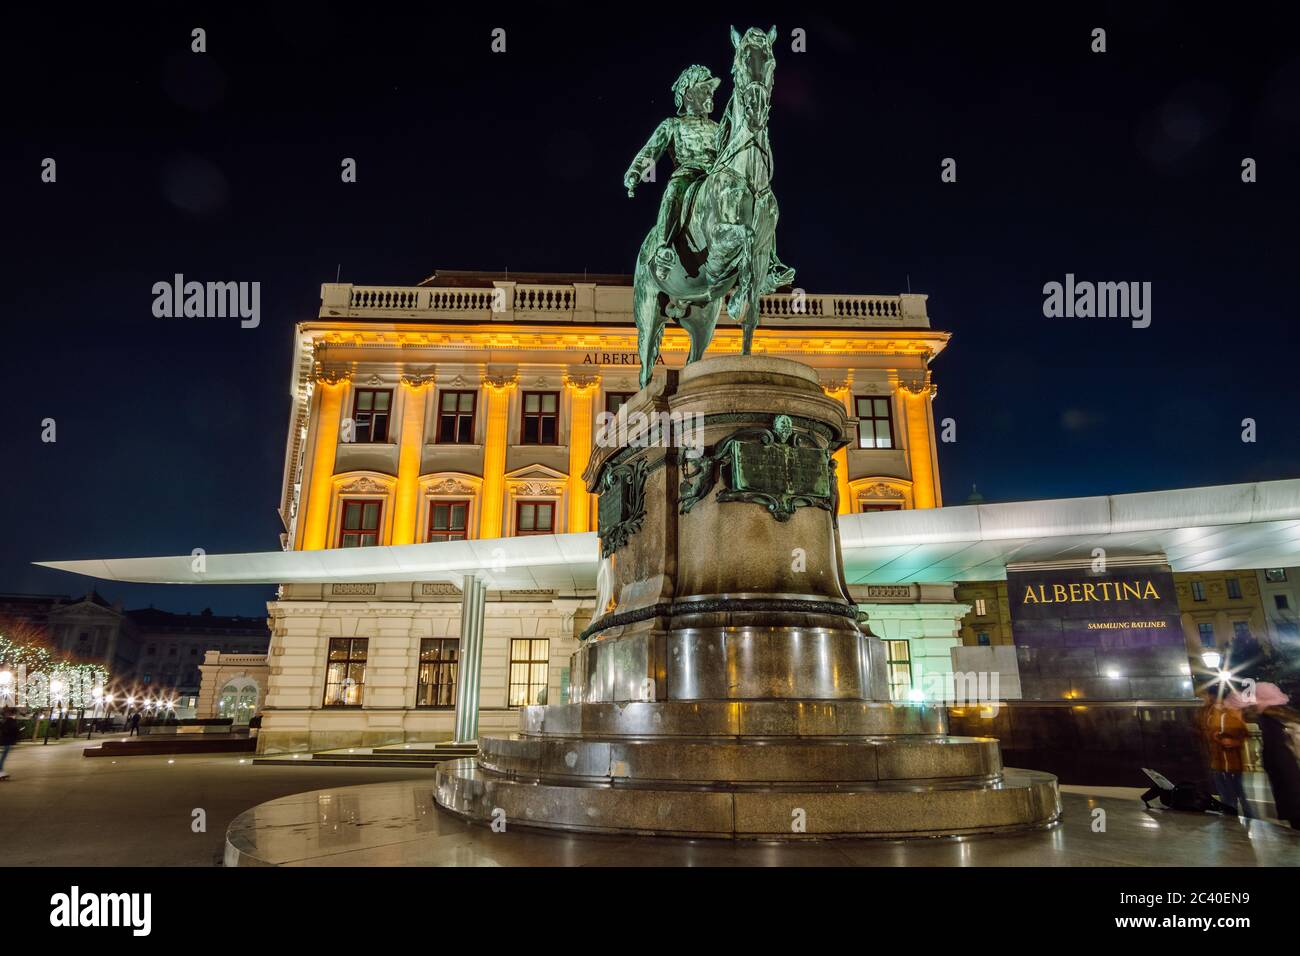 Vue nocturne du musée Albertina, Vienne. Statue équestre de l'Archiduc Albert devant le musée Albertina de nuit, Vienne, Autriche. Banque D'Images